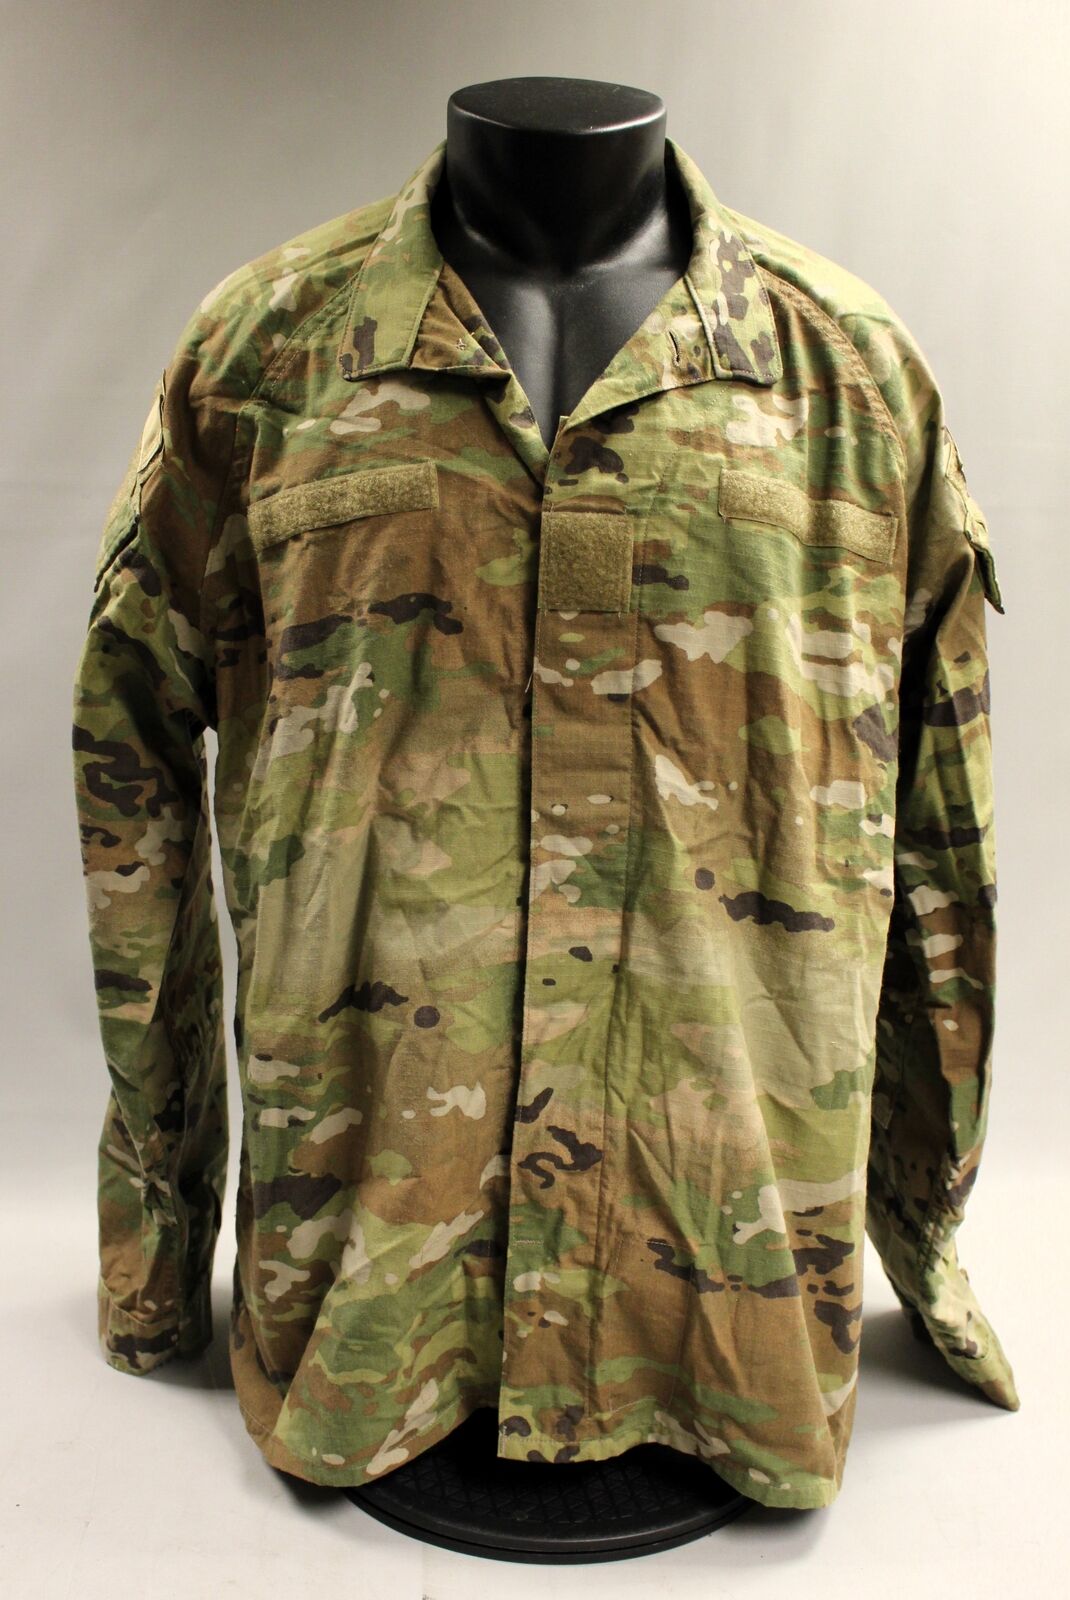 OCP Improved Hot Weather Combat Coat Jacket - Large Long - Used